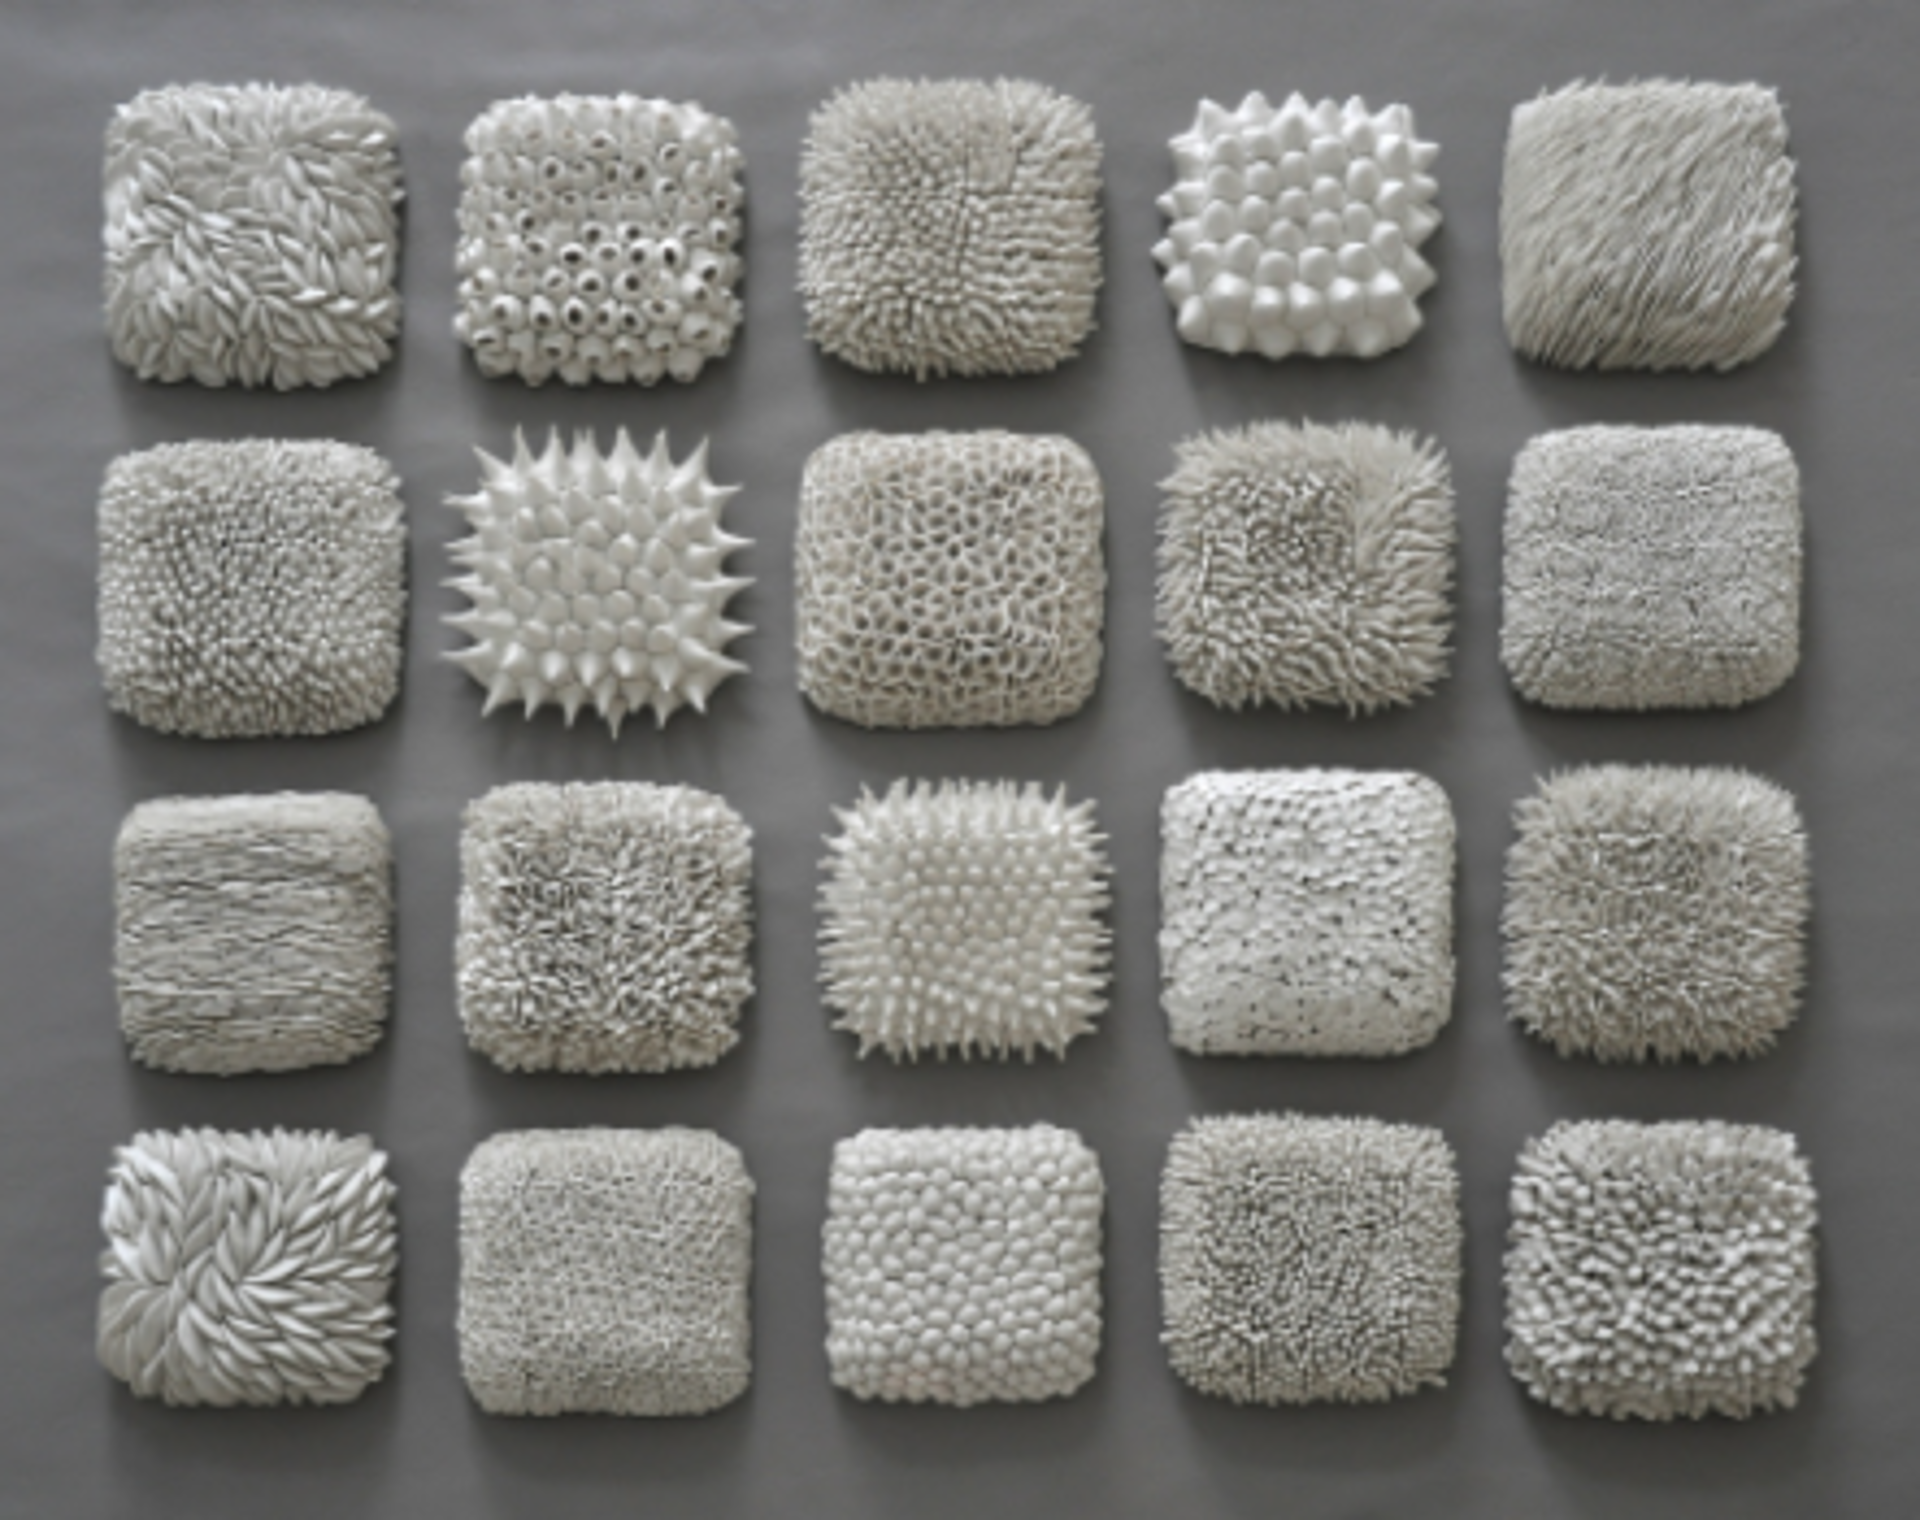 Lichen by Heather Knight